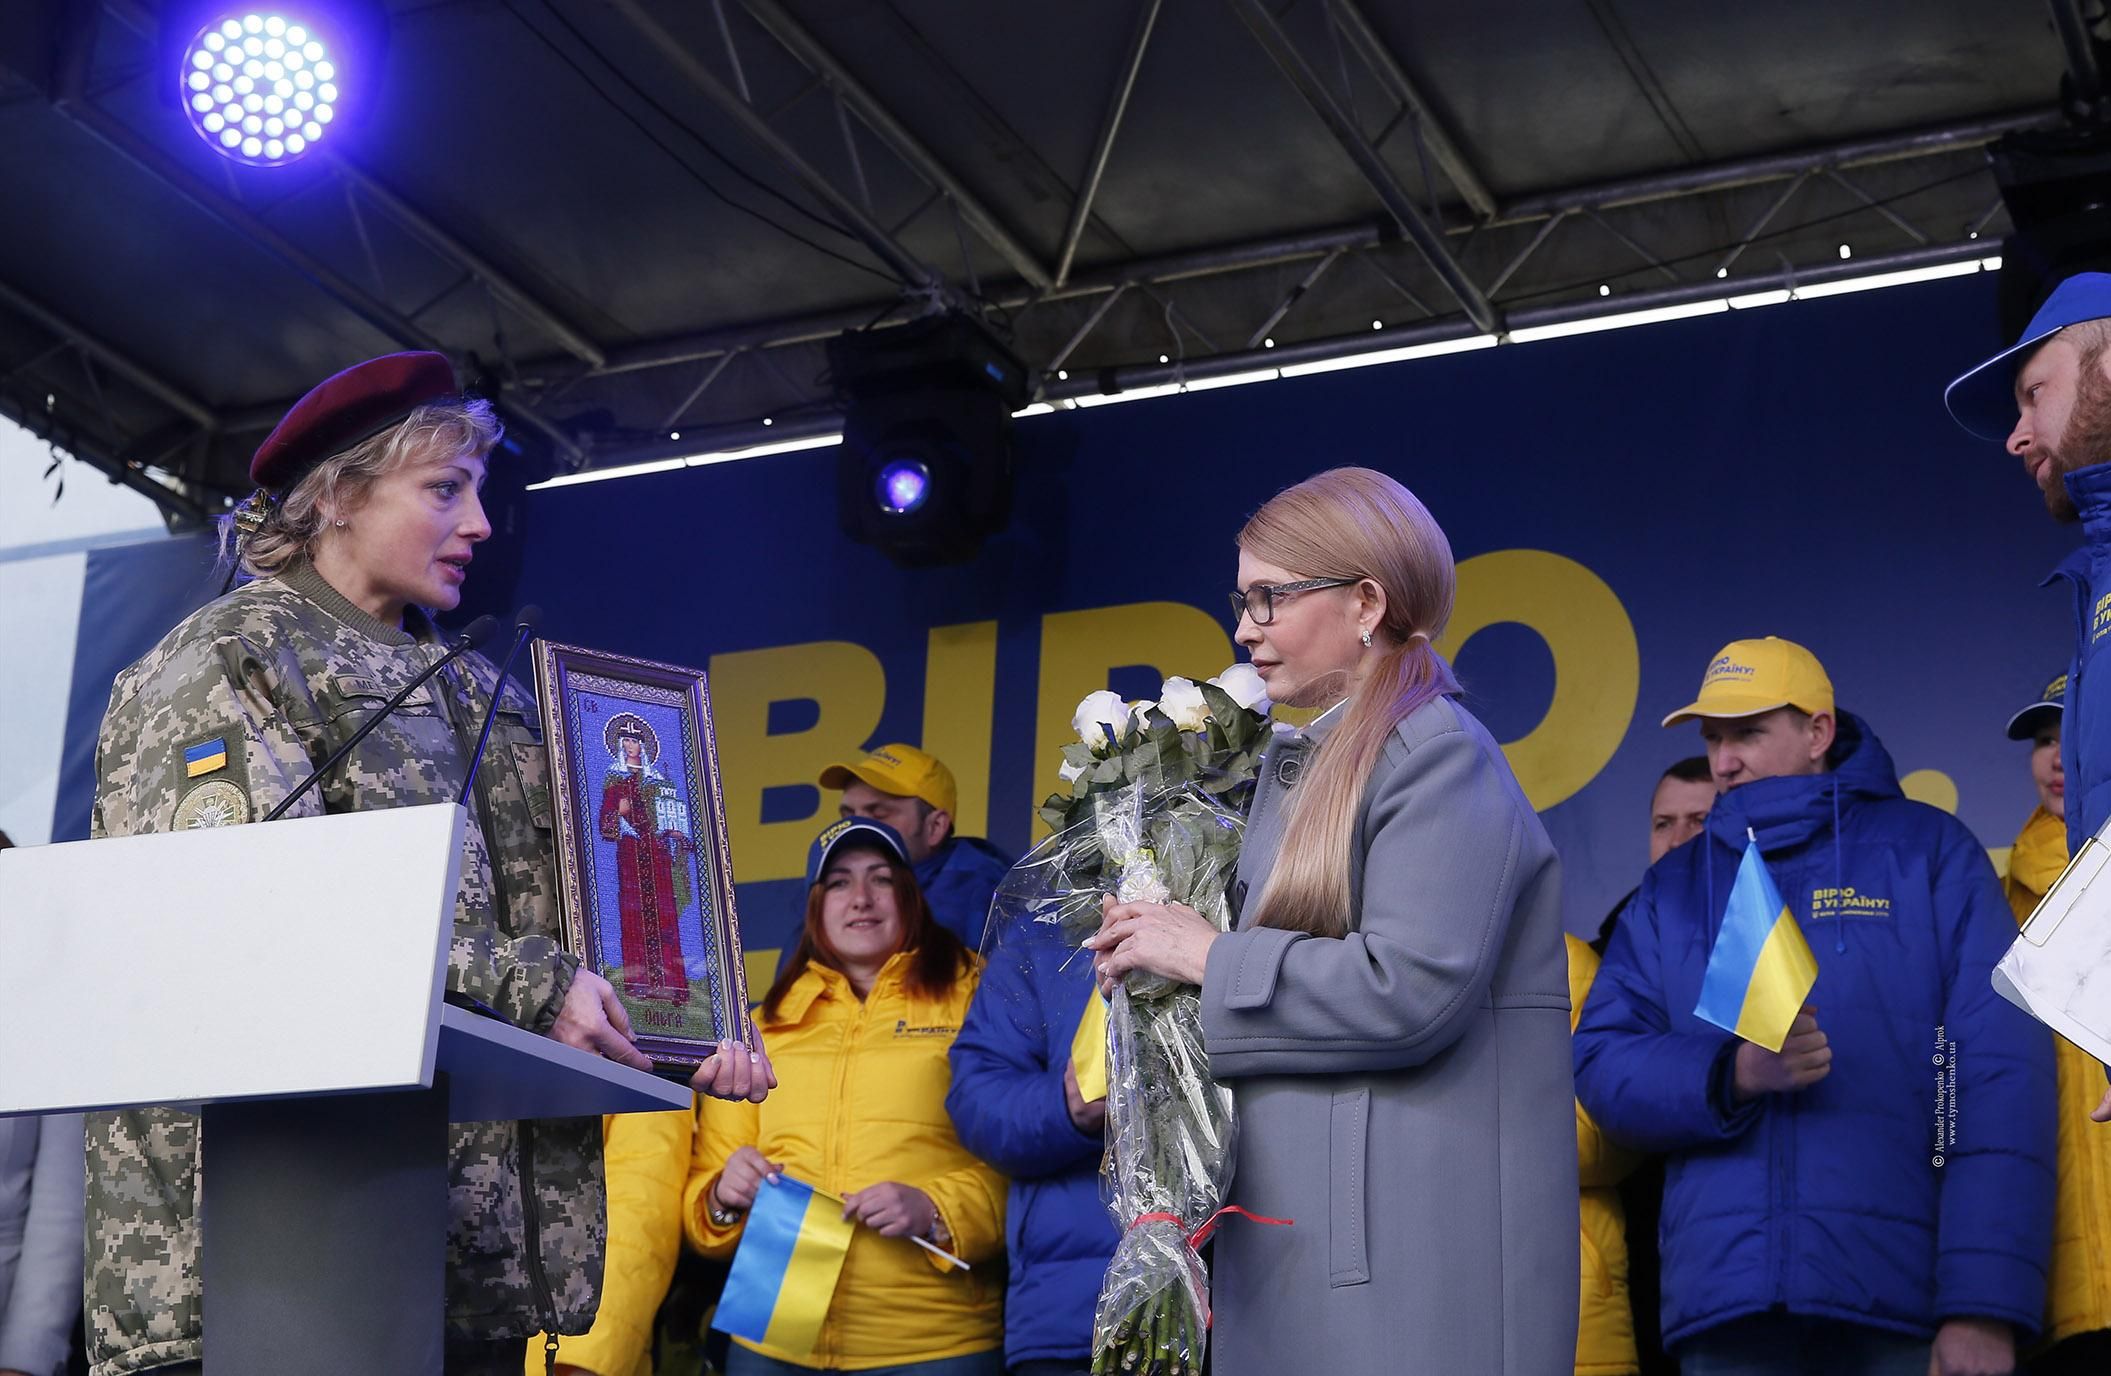 Новый Президент устранит коррупционеров от власти и сделает Украину сильной, – Юлия Тимошенко